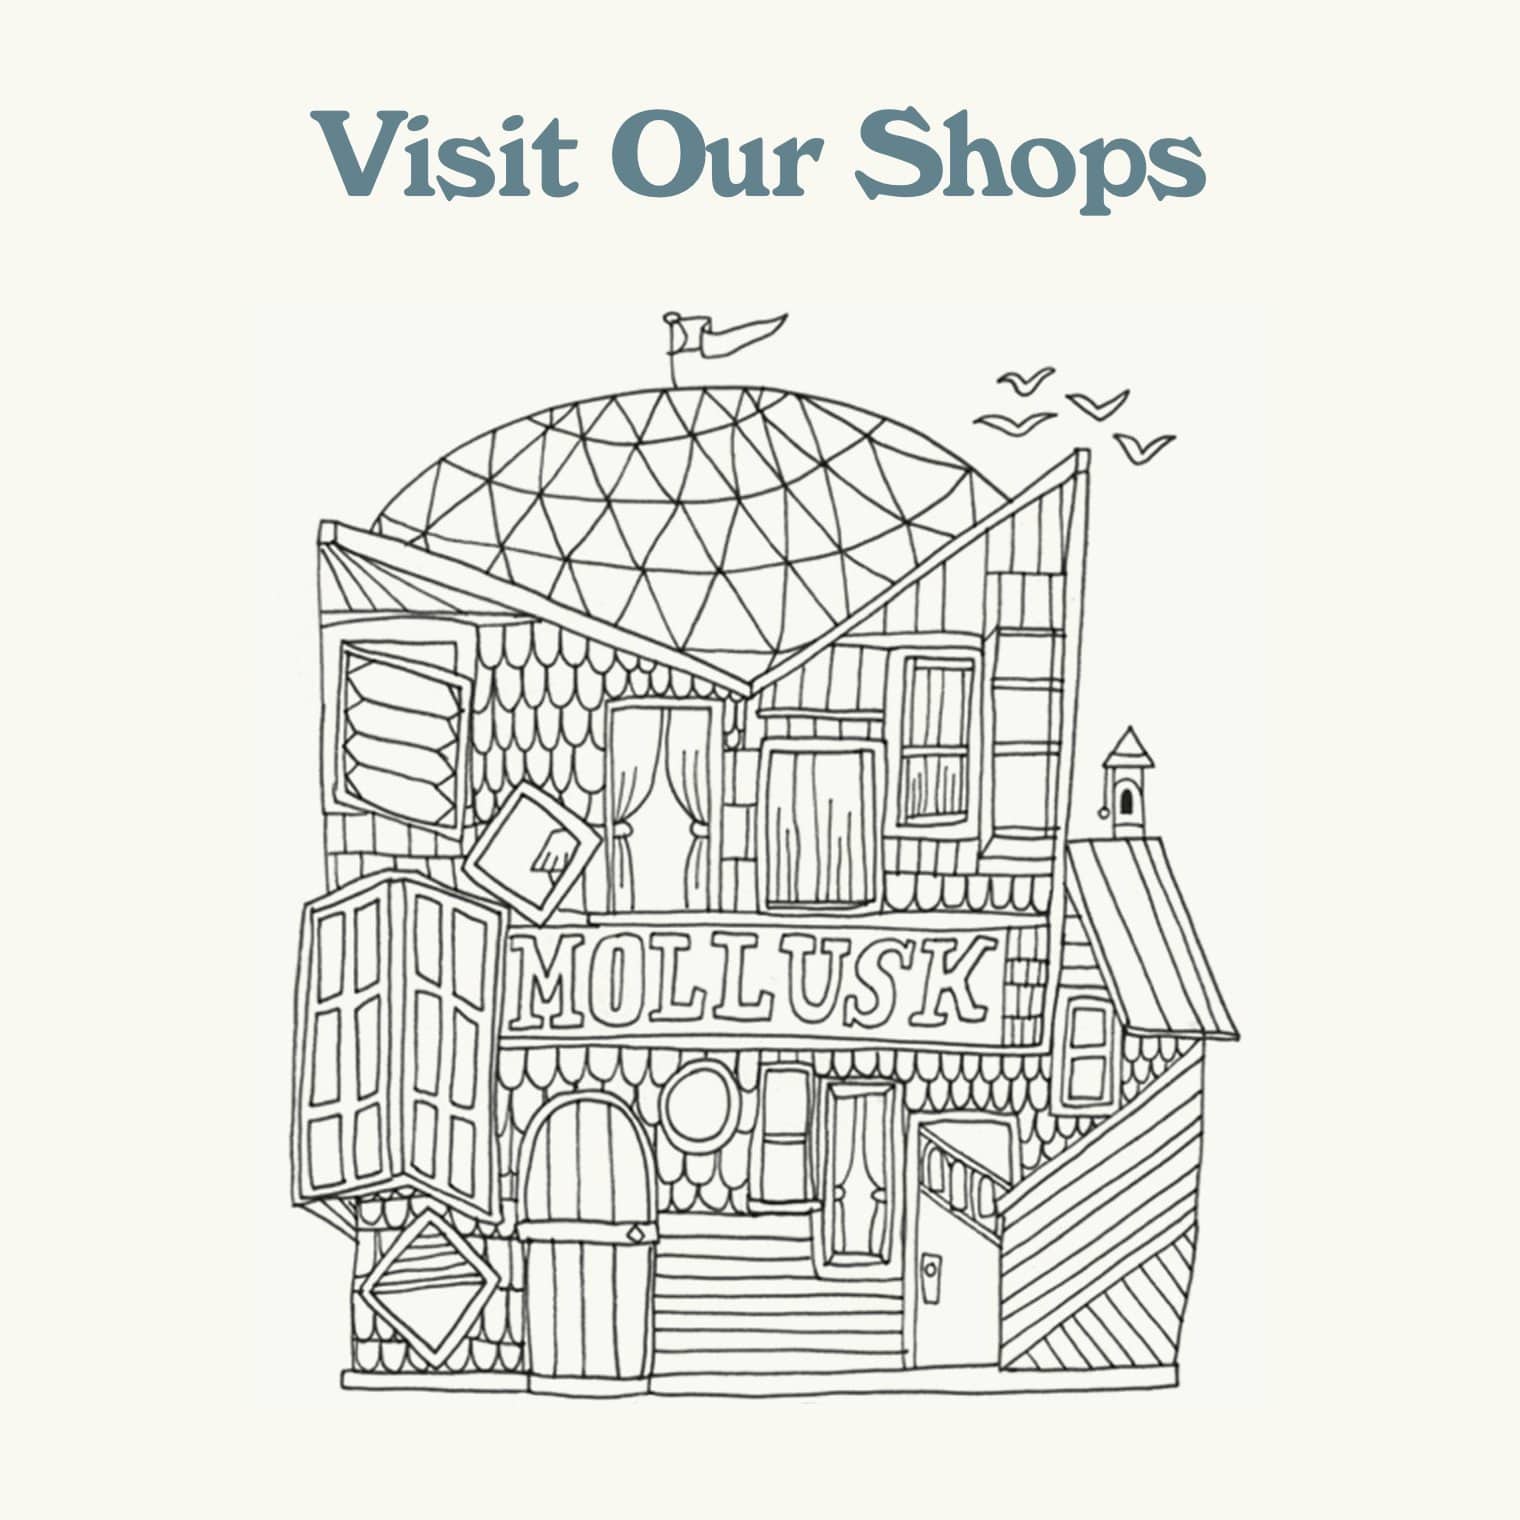 Visit our shops